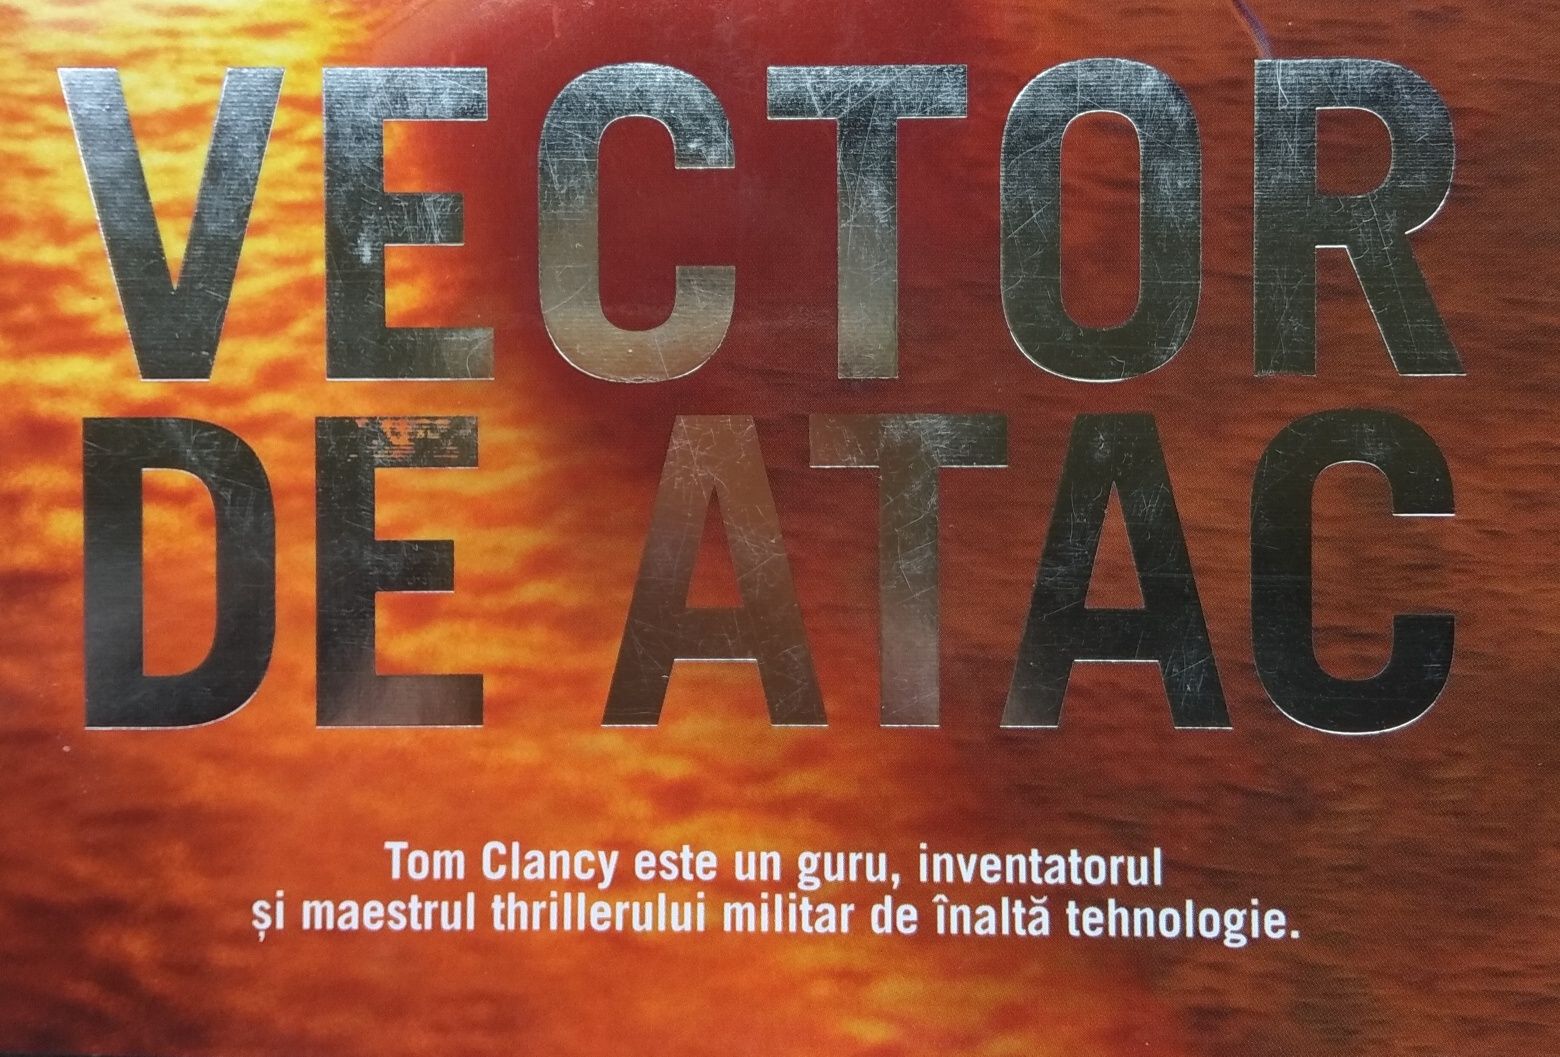 Bestseller. VECTOR DE ATAC, de Tom Clancy.